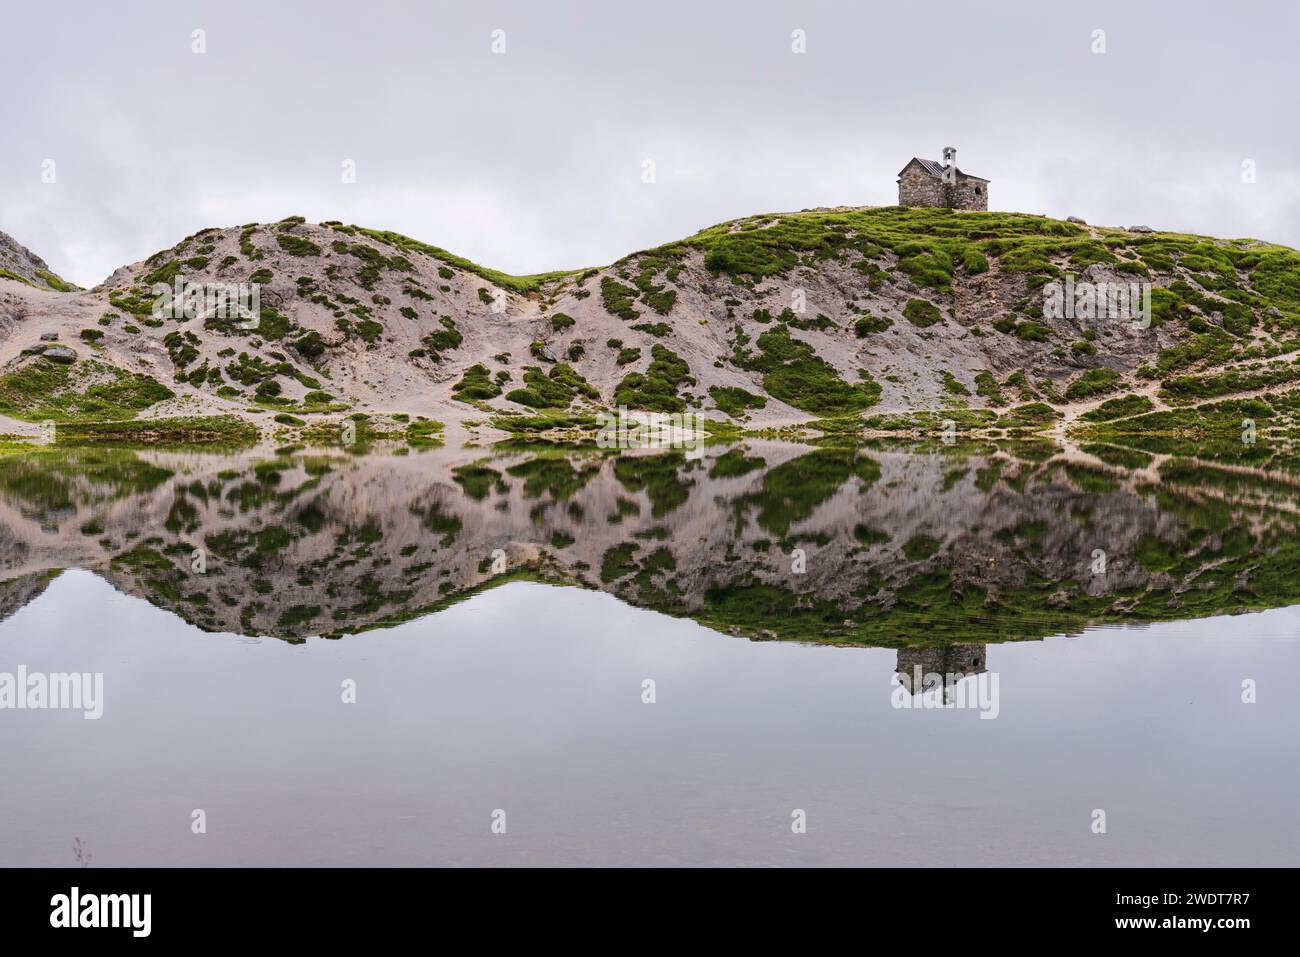 Die kleine Kirche und die Reflexion der alpinen Landschaft im ruhigen Wasser, OLBE Seen, Sappada, Karniche Alpen, Provinz Udine Stockfoto